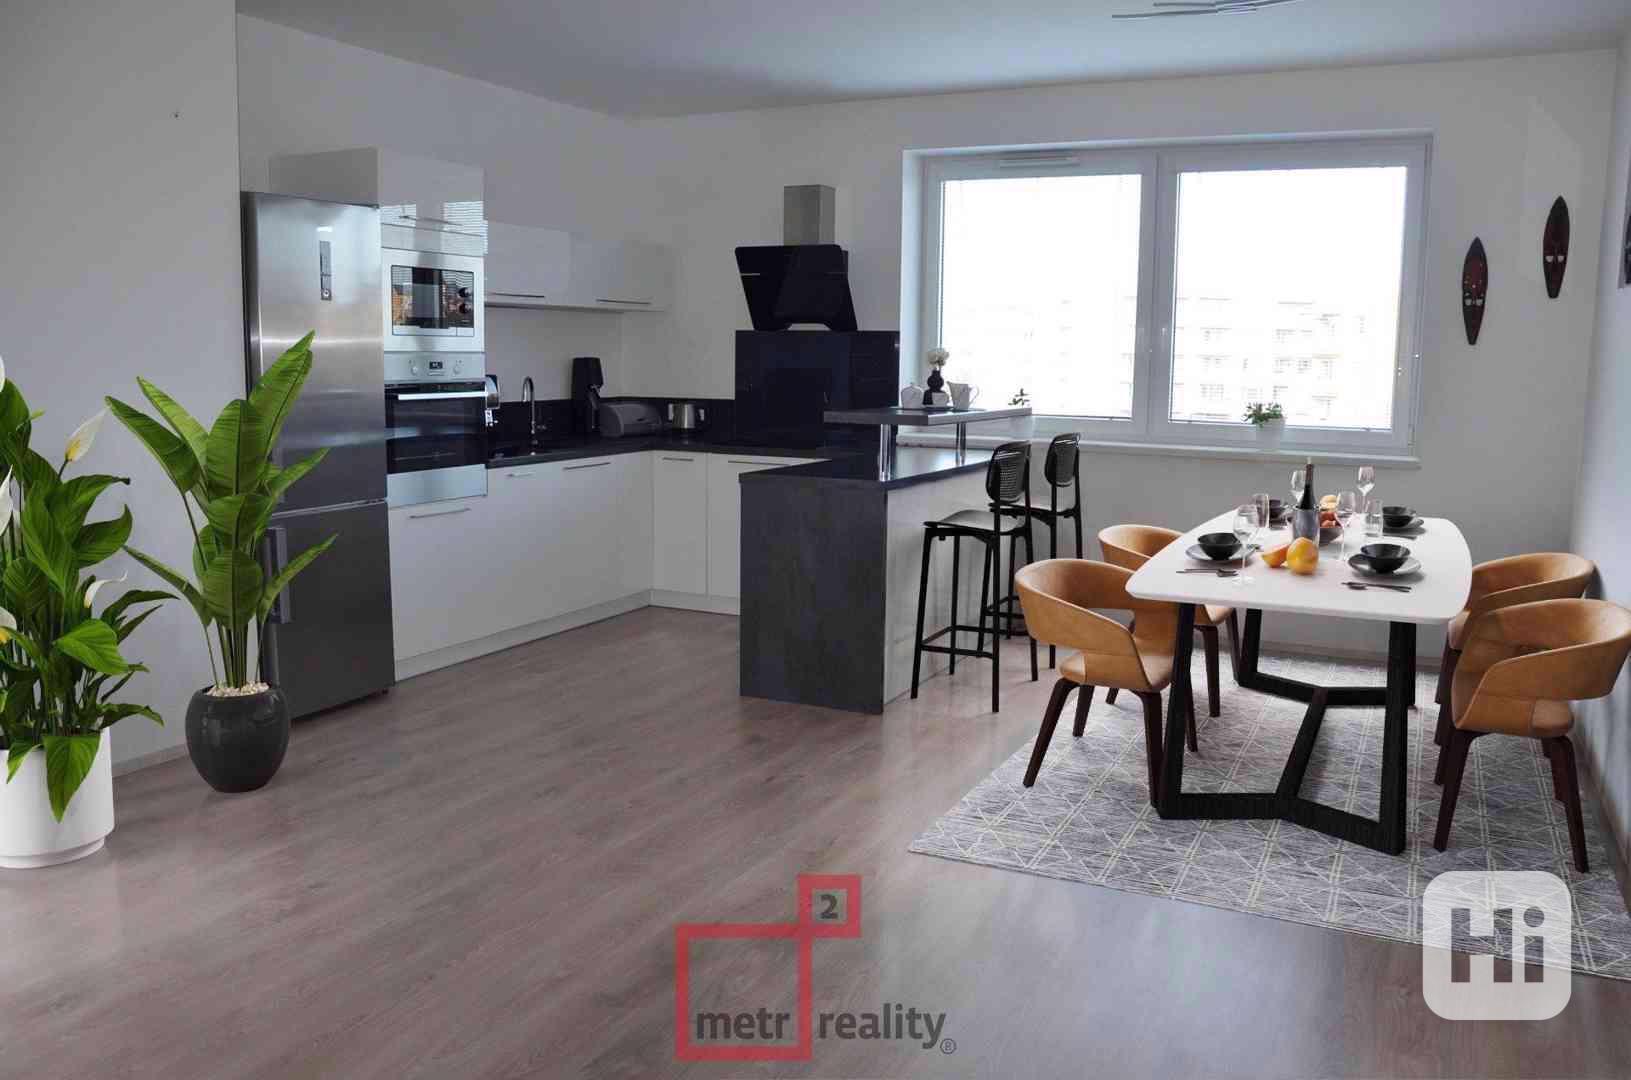 Prodej bytu 2+kk s velkým obývacím pokojem a možností garážového stání/Olomouc - Povel - foto 1